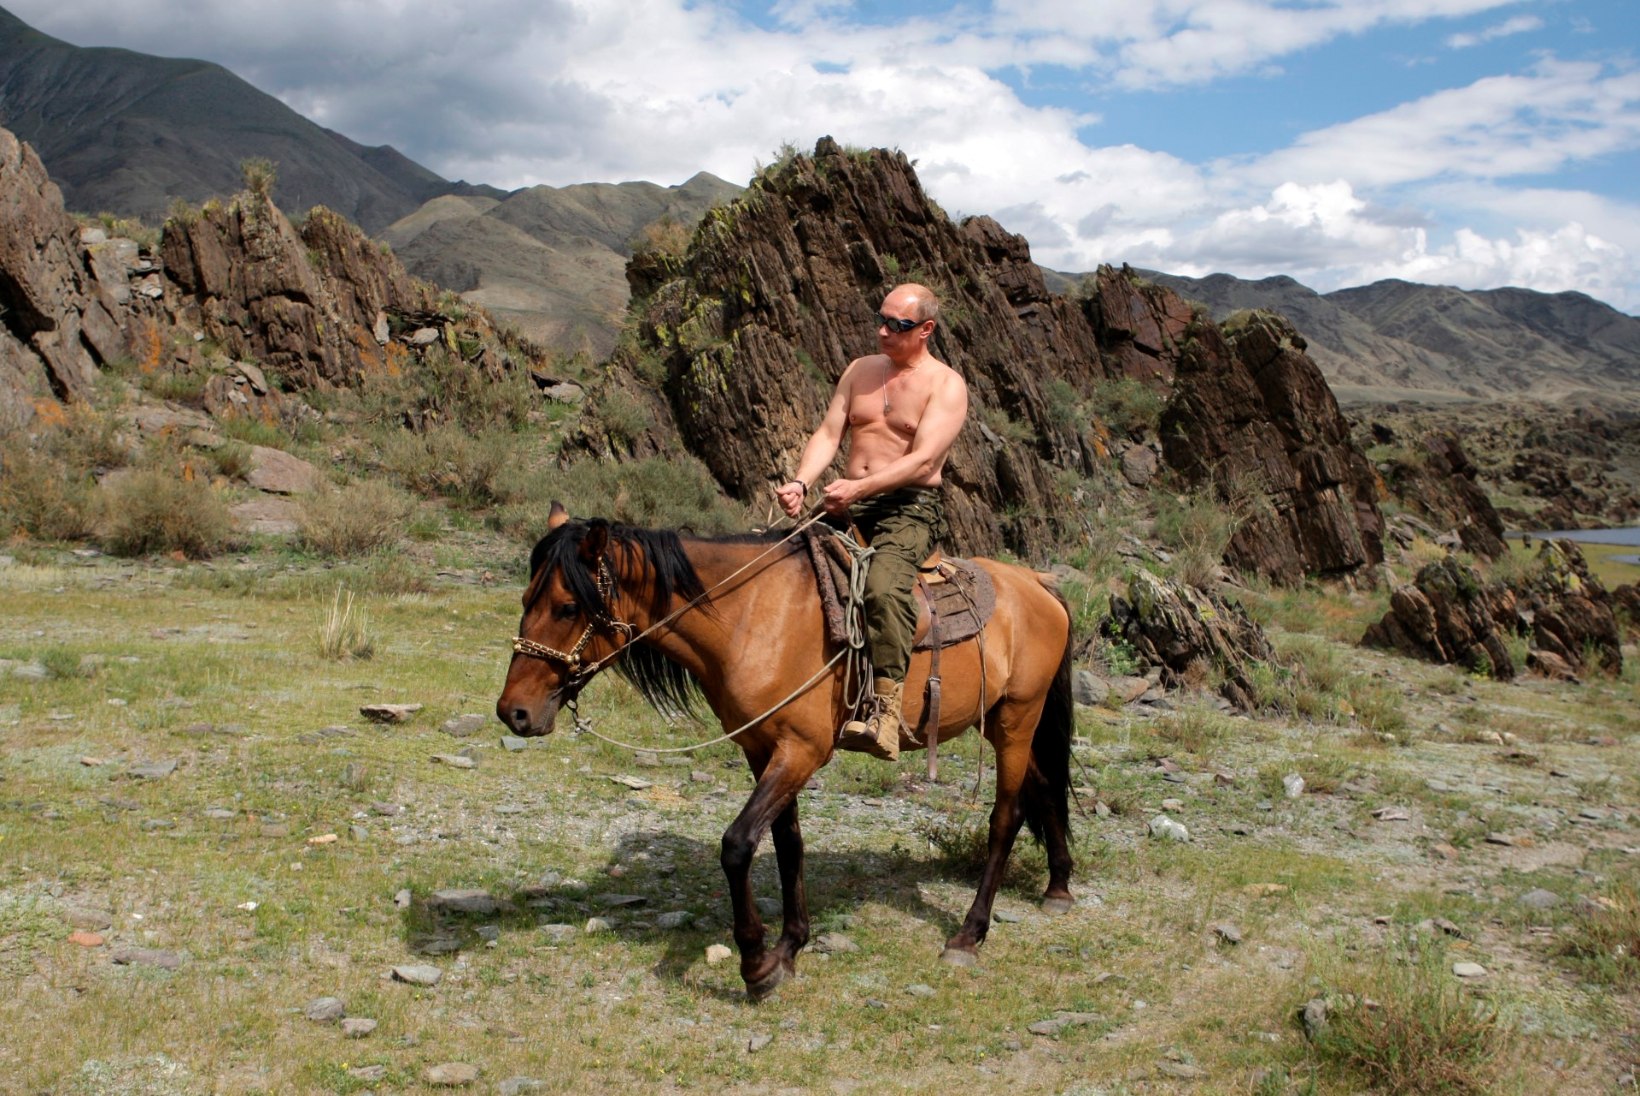 FOTOD | Milline oleks vaatepilt, kui Trump ja Putin koos ratsutaksid?